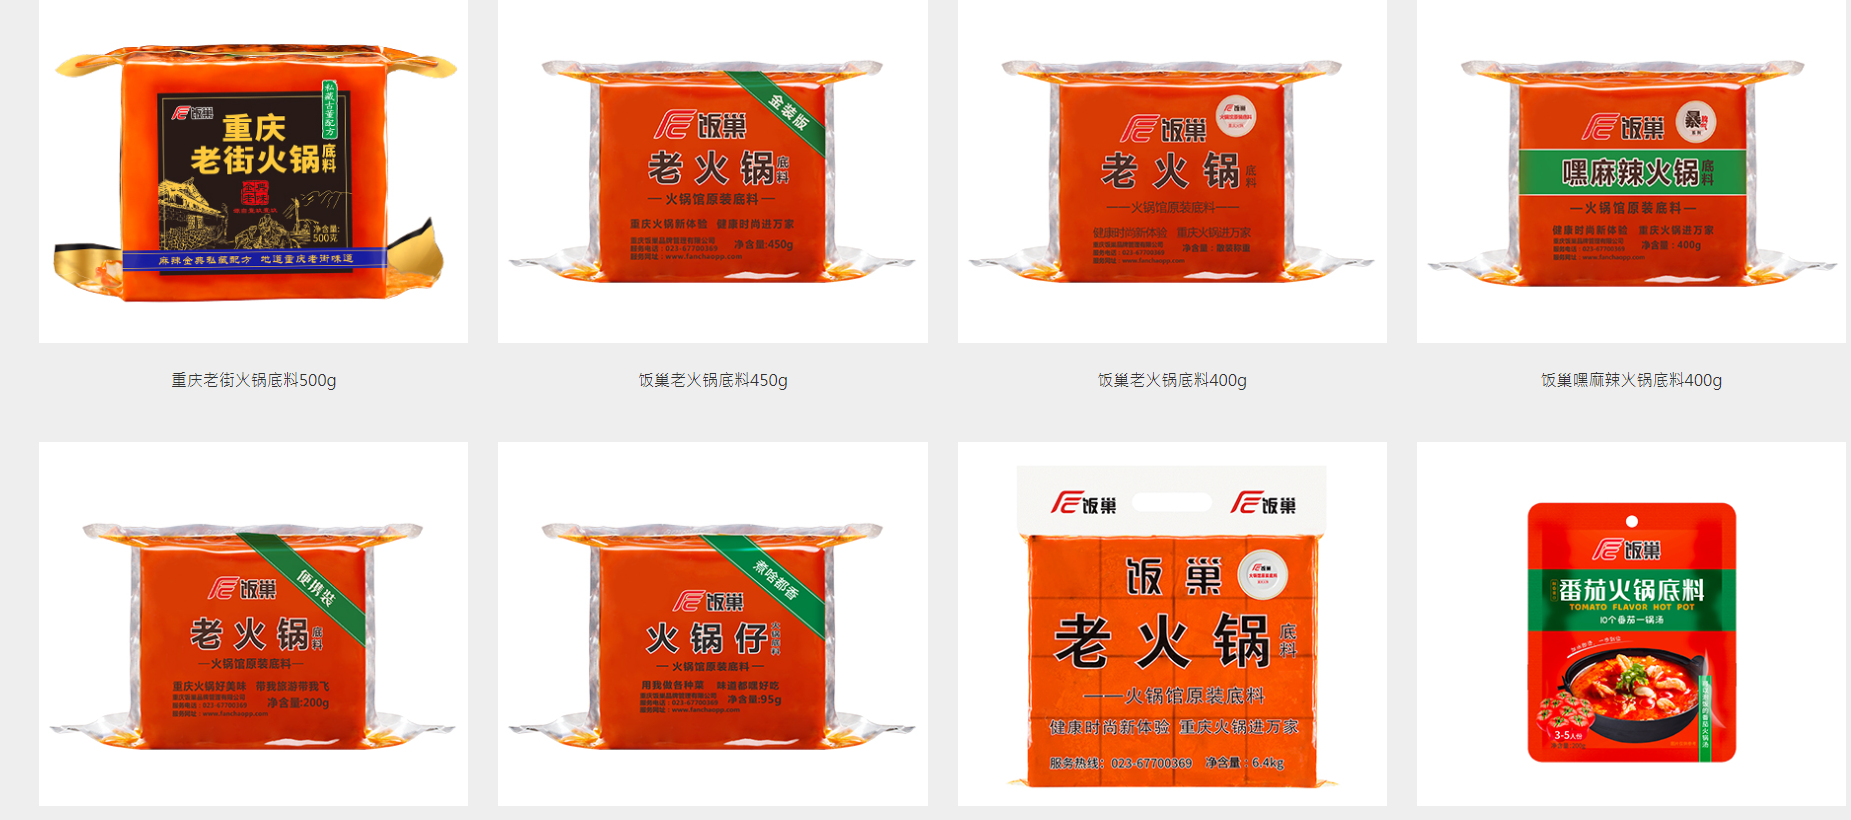 重庆饭巢品牌有限公司提供重庆老火锅底料、火锅蘸料、川味调味 - FoodTalks食品供需平台